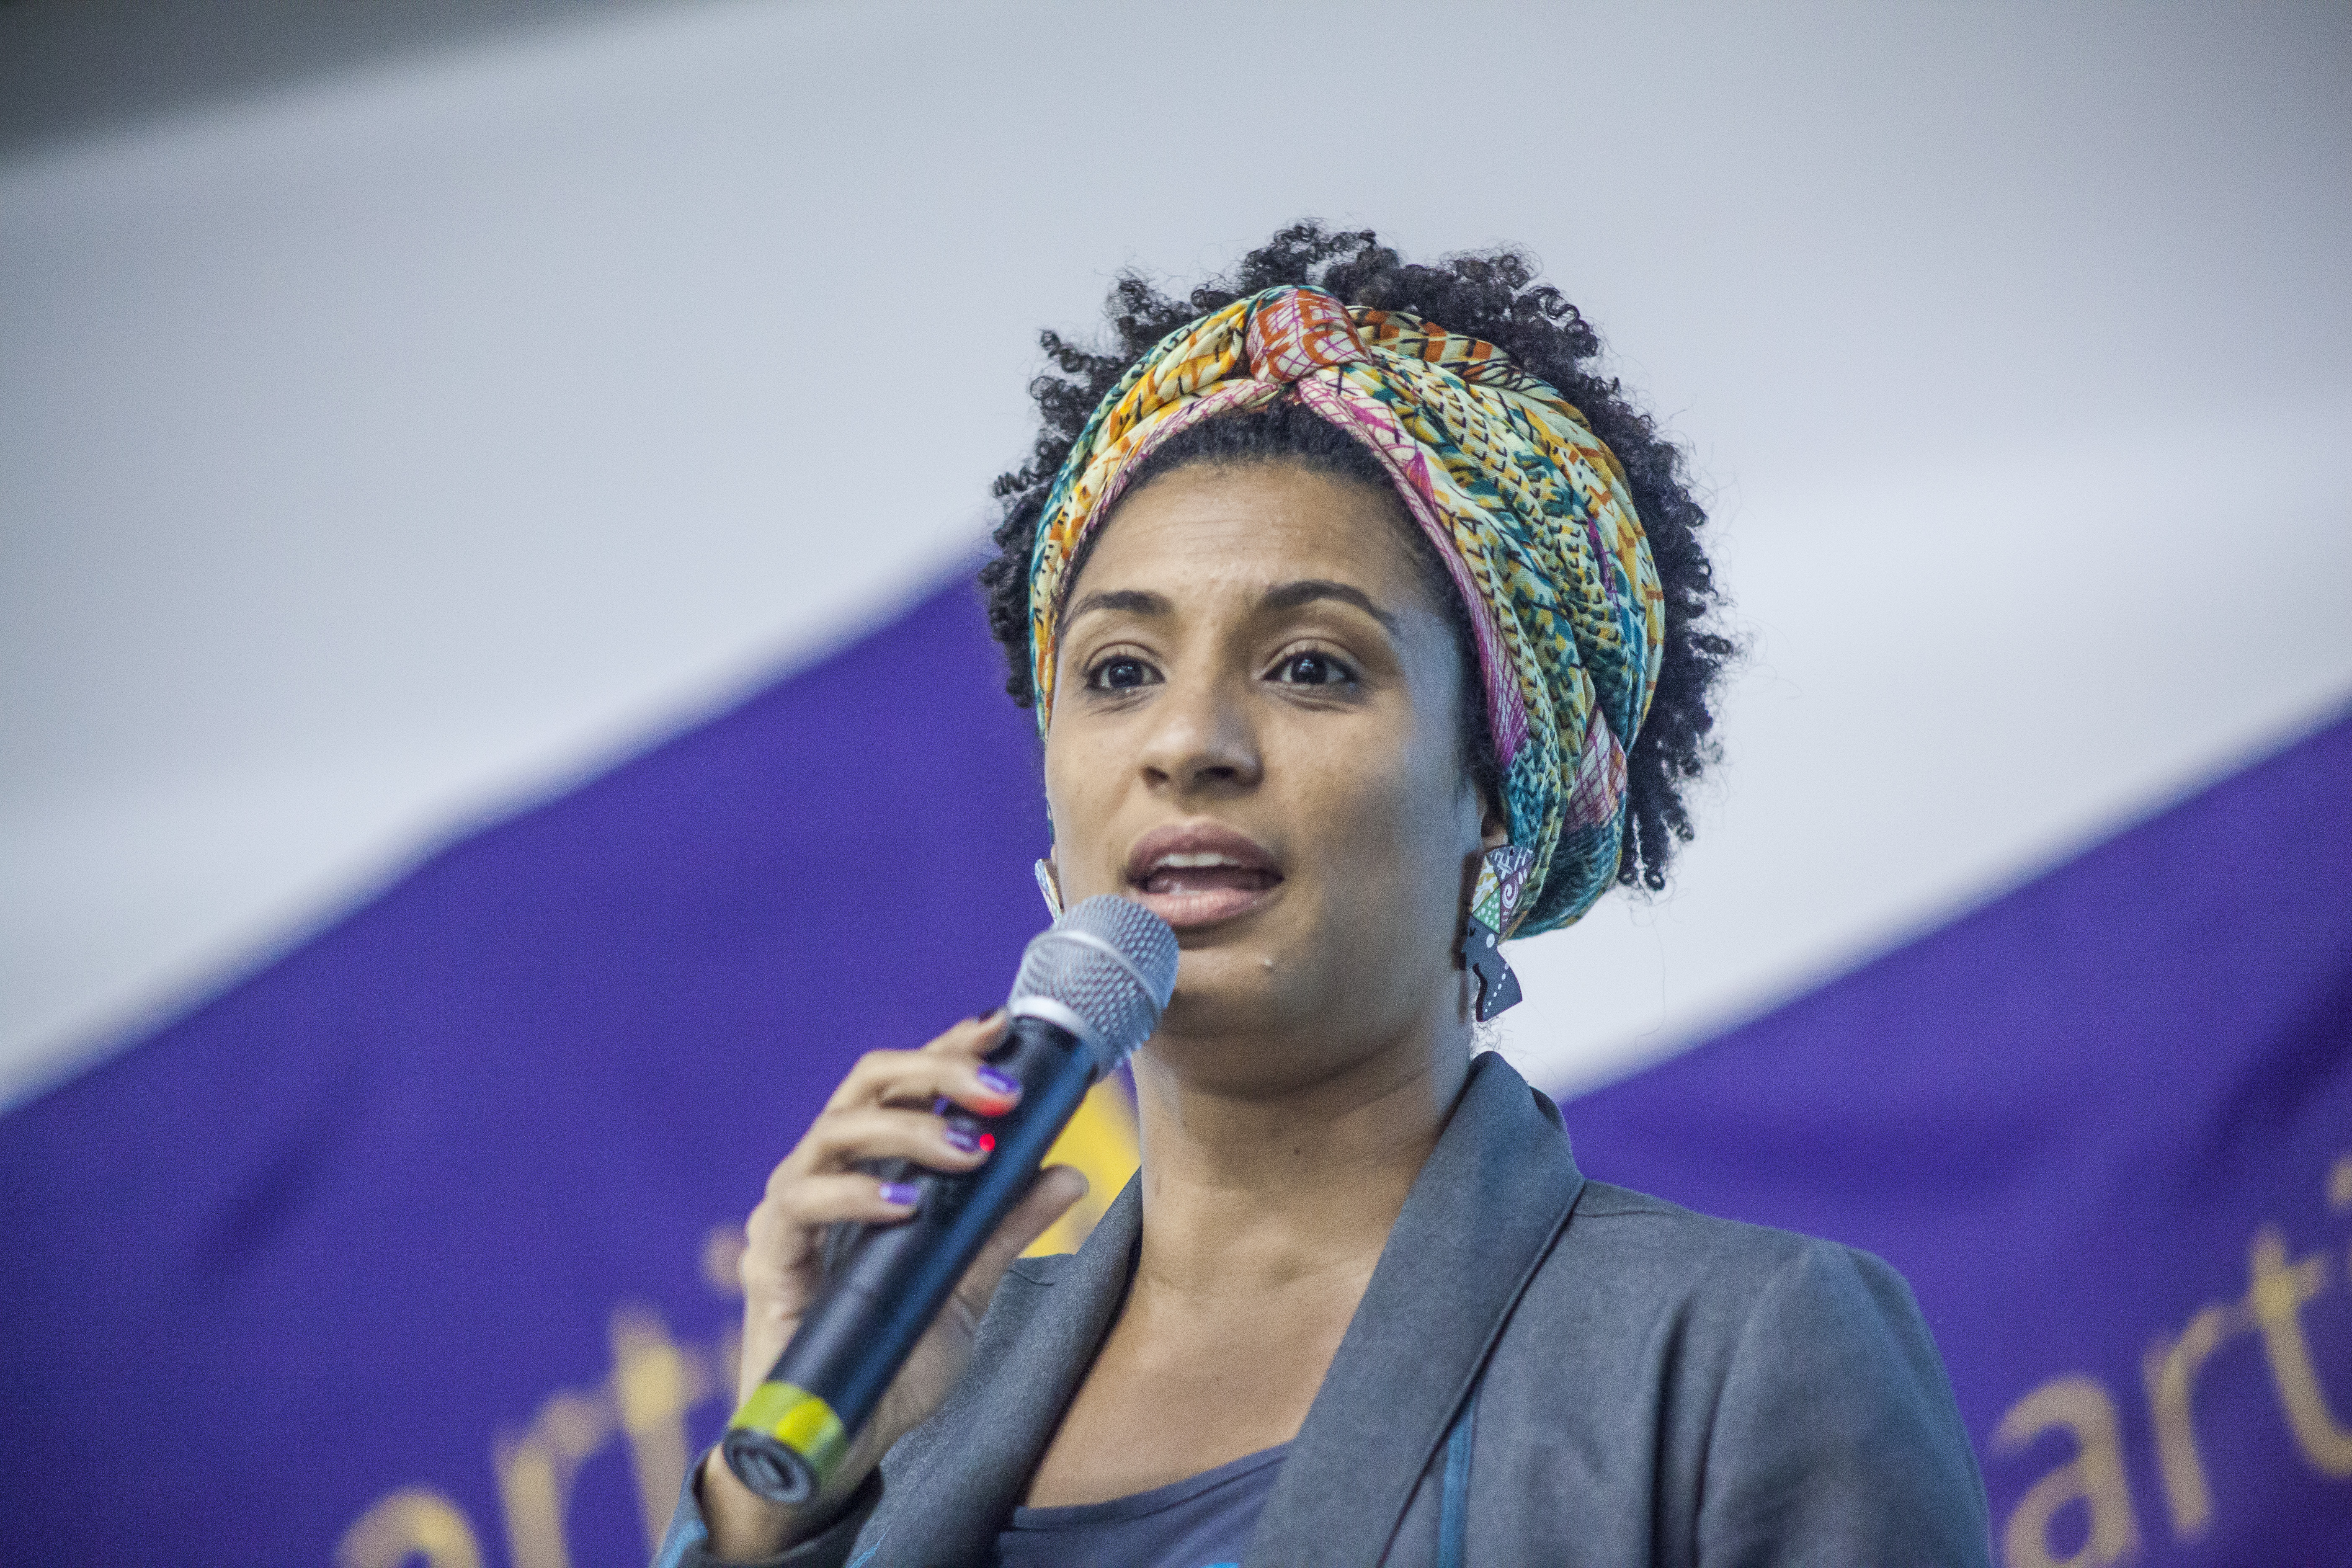 Foto de frente, até a altura do busto, da vereadora carioca Marielle Franco (1979-2018), segurando um microfone durante um discurso.